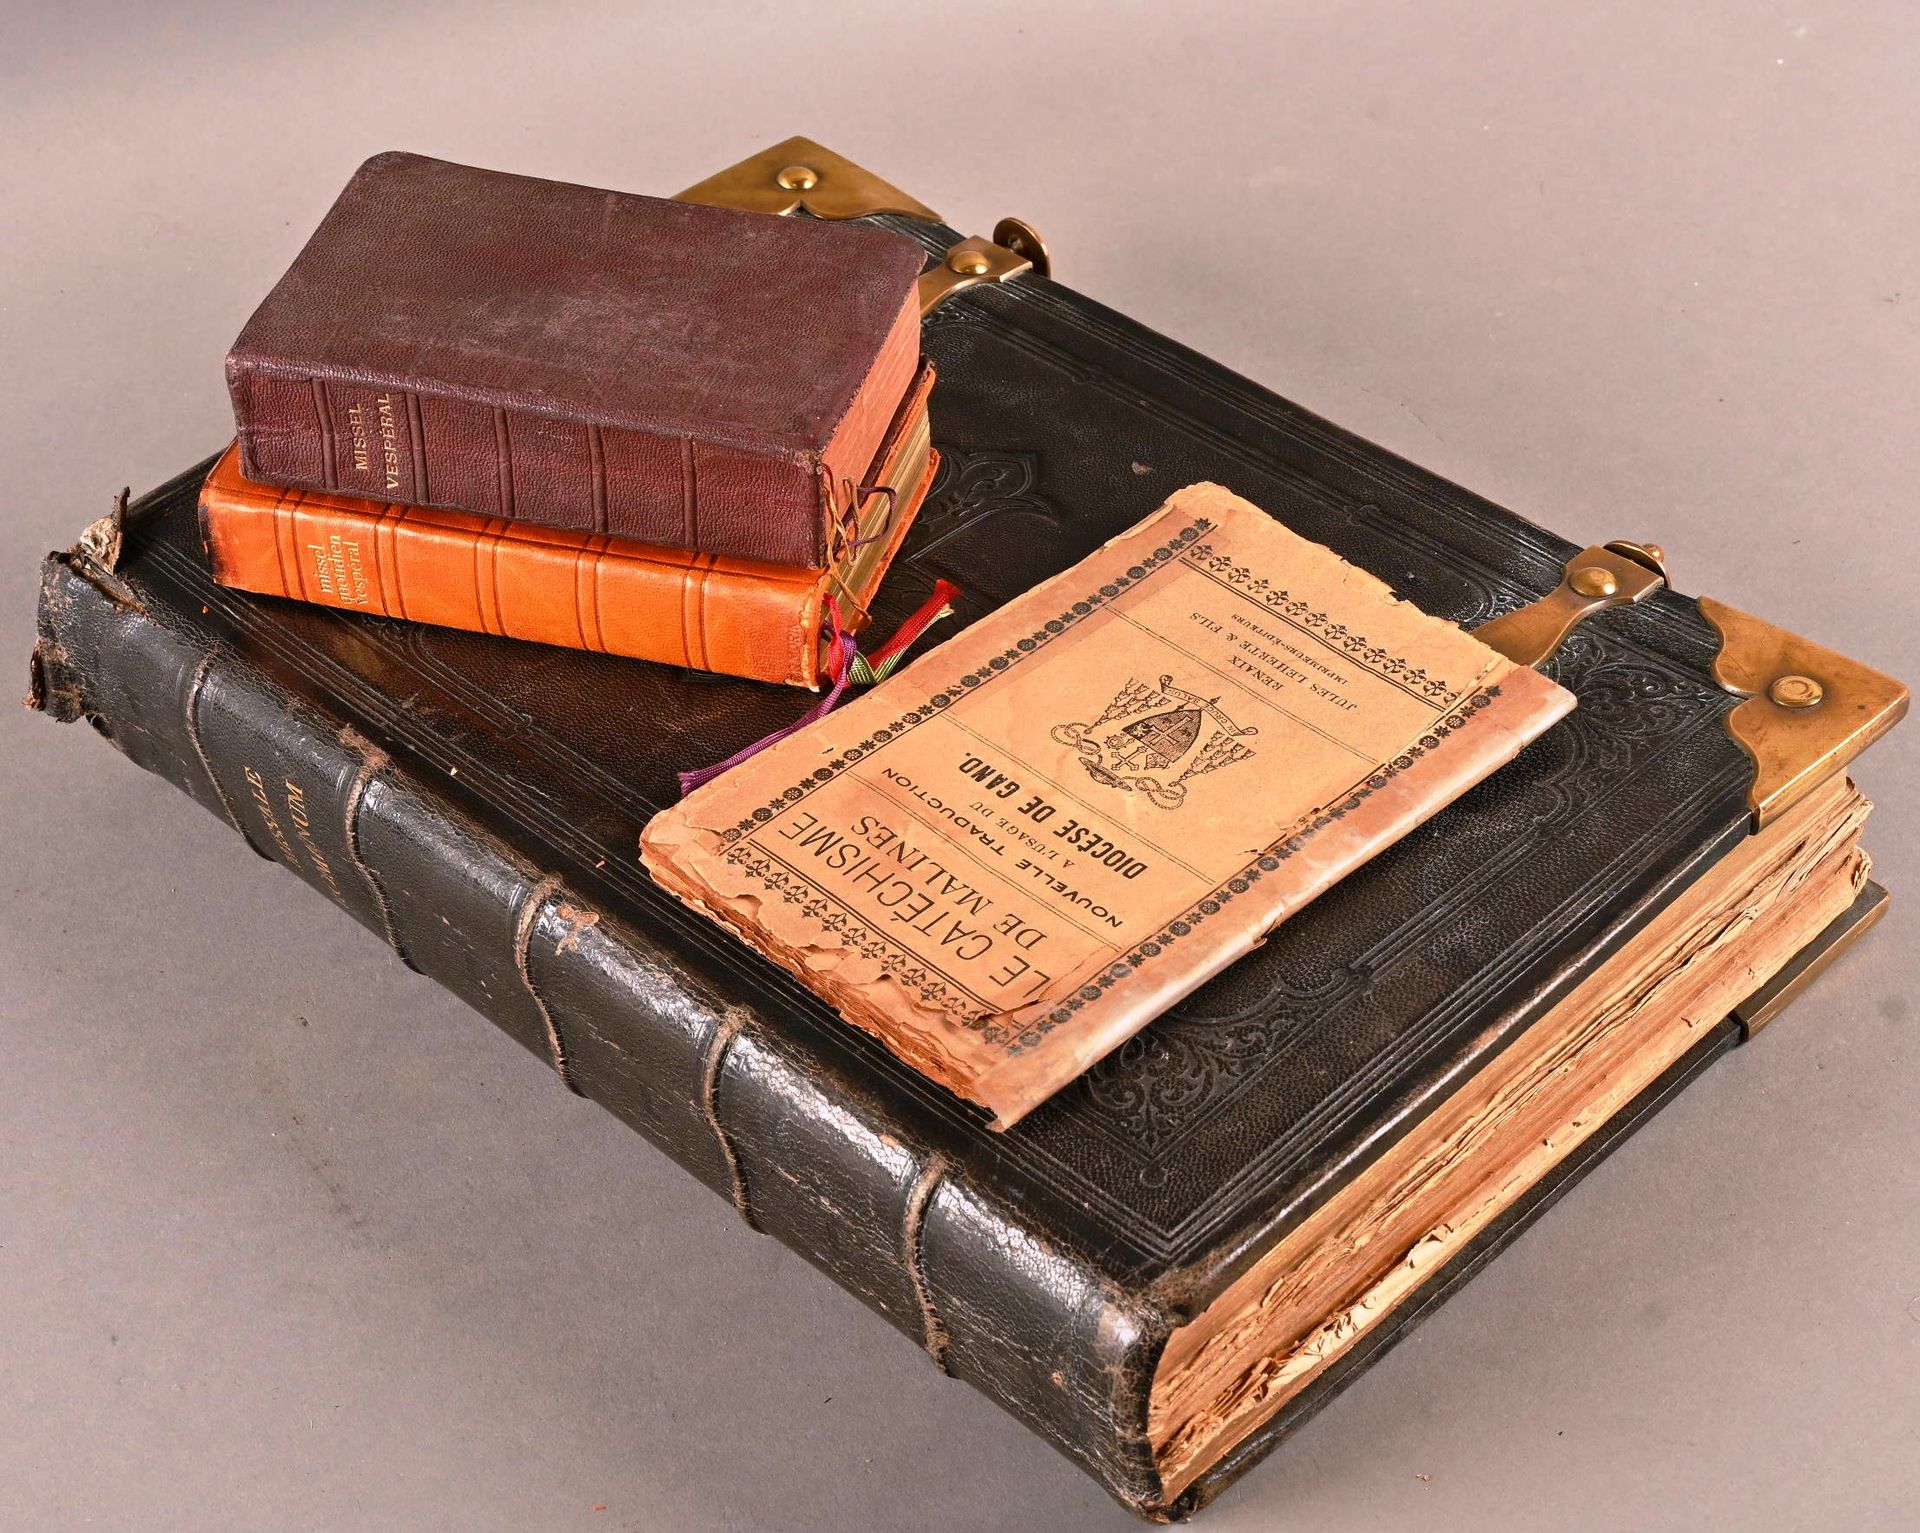 Missale Romanum, 1872. Missale Romanum, 1872.
In condizioni d'uso con strappi e &hellip;